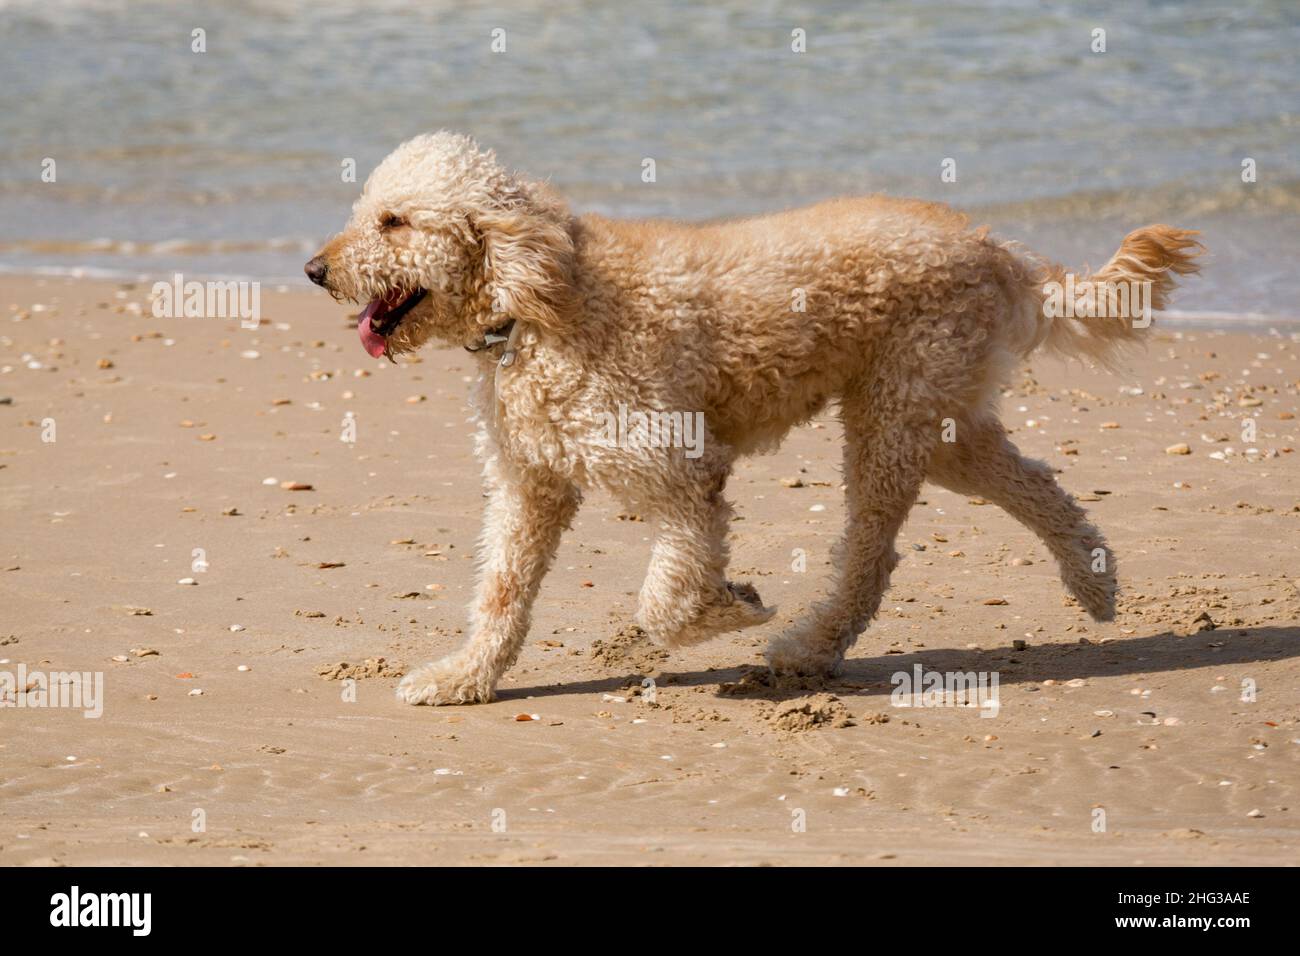 Poodle Dog a couru sur la plage Banque D'Images